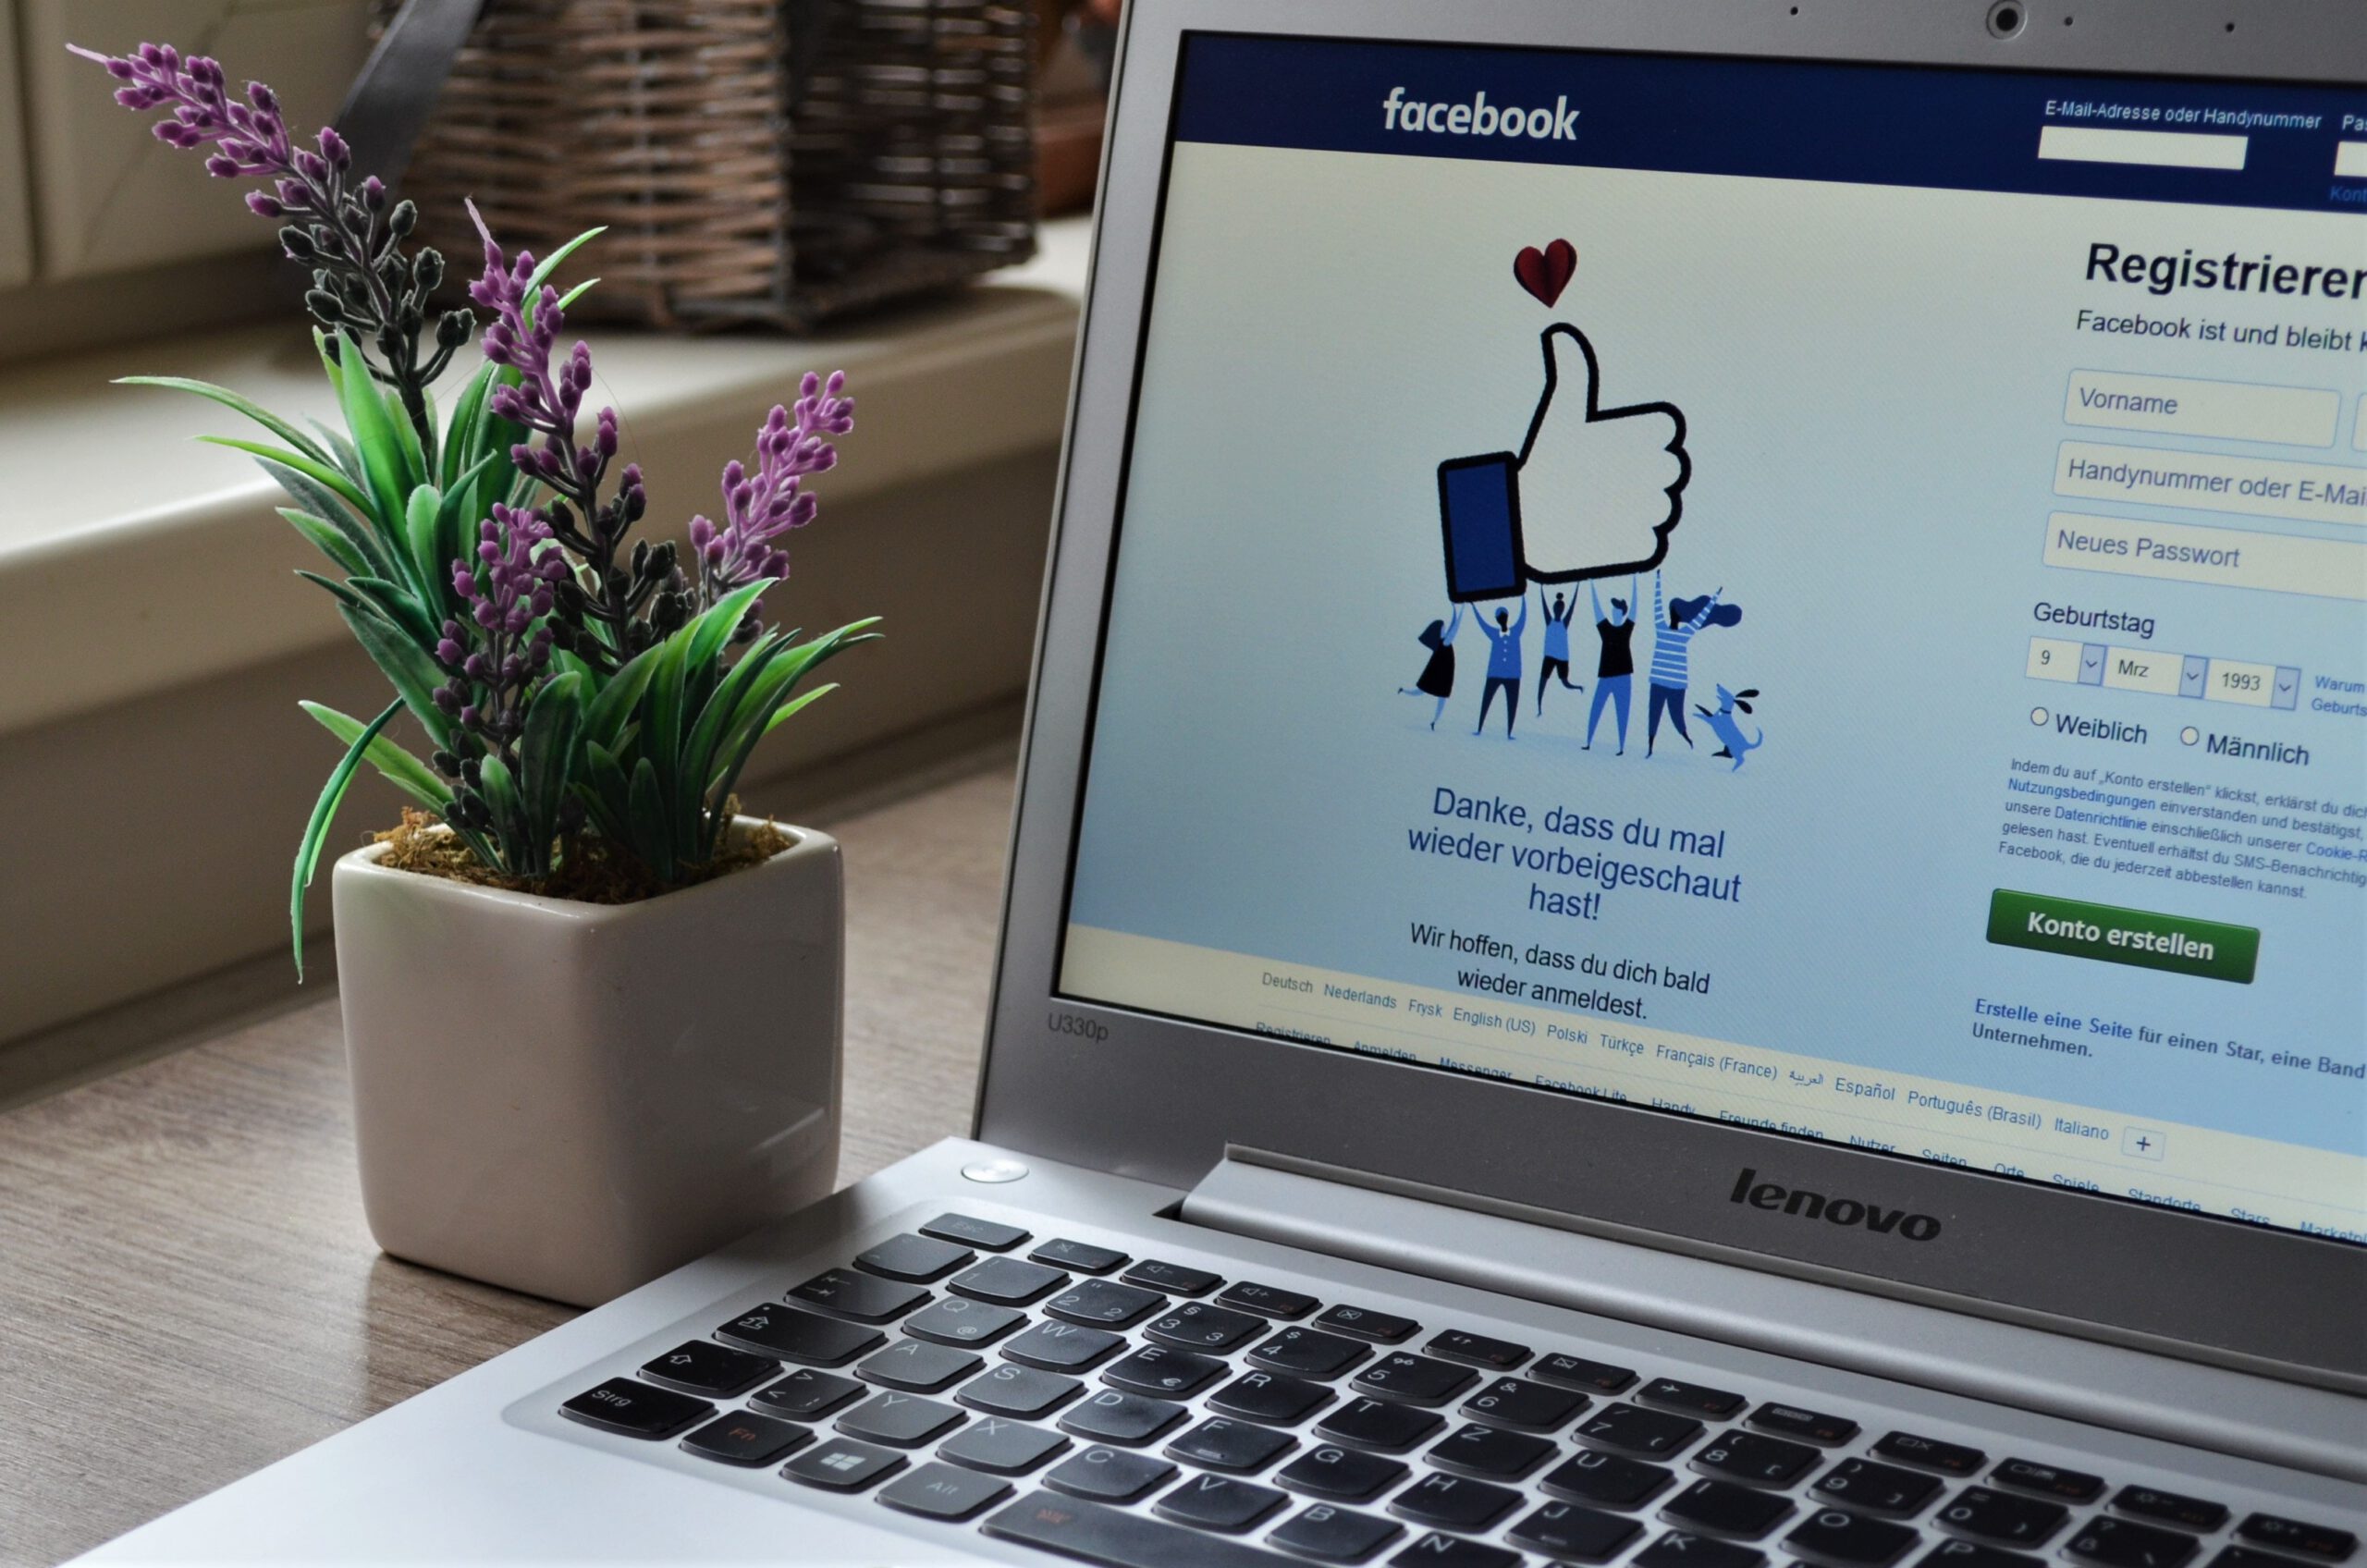 Otwarty laptop z wyświetloną stroną Facebooka na biurku i kwiatek w doniczce, stojący obok